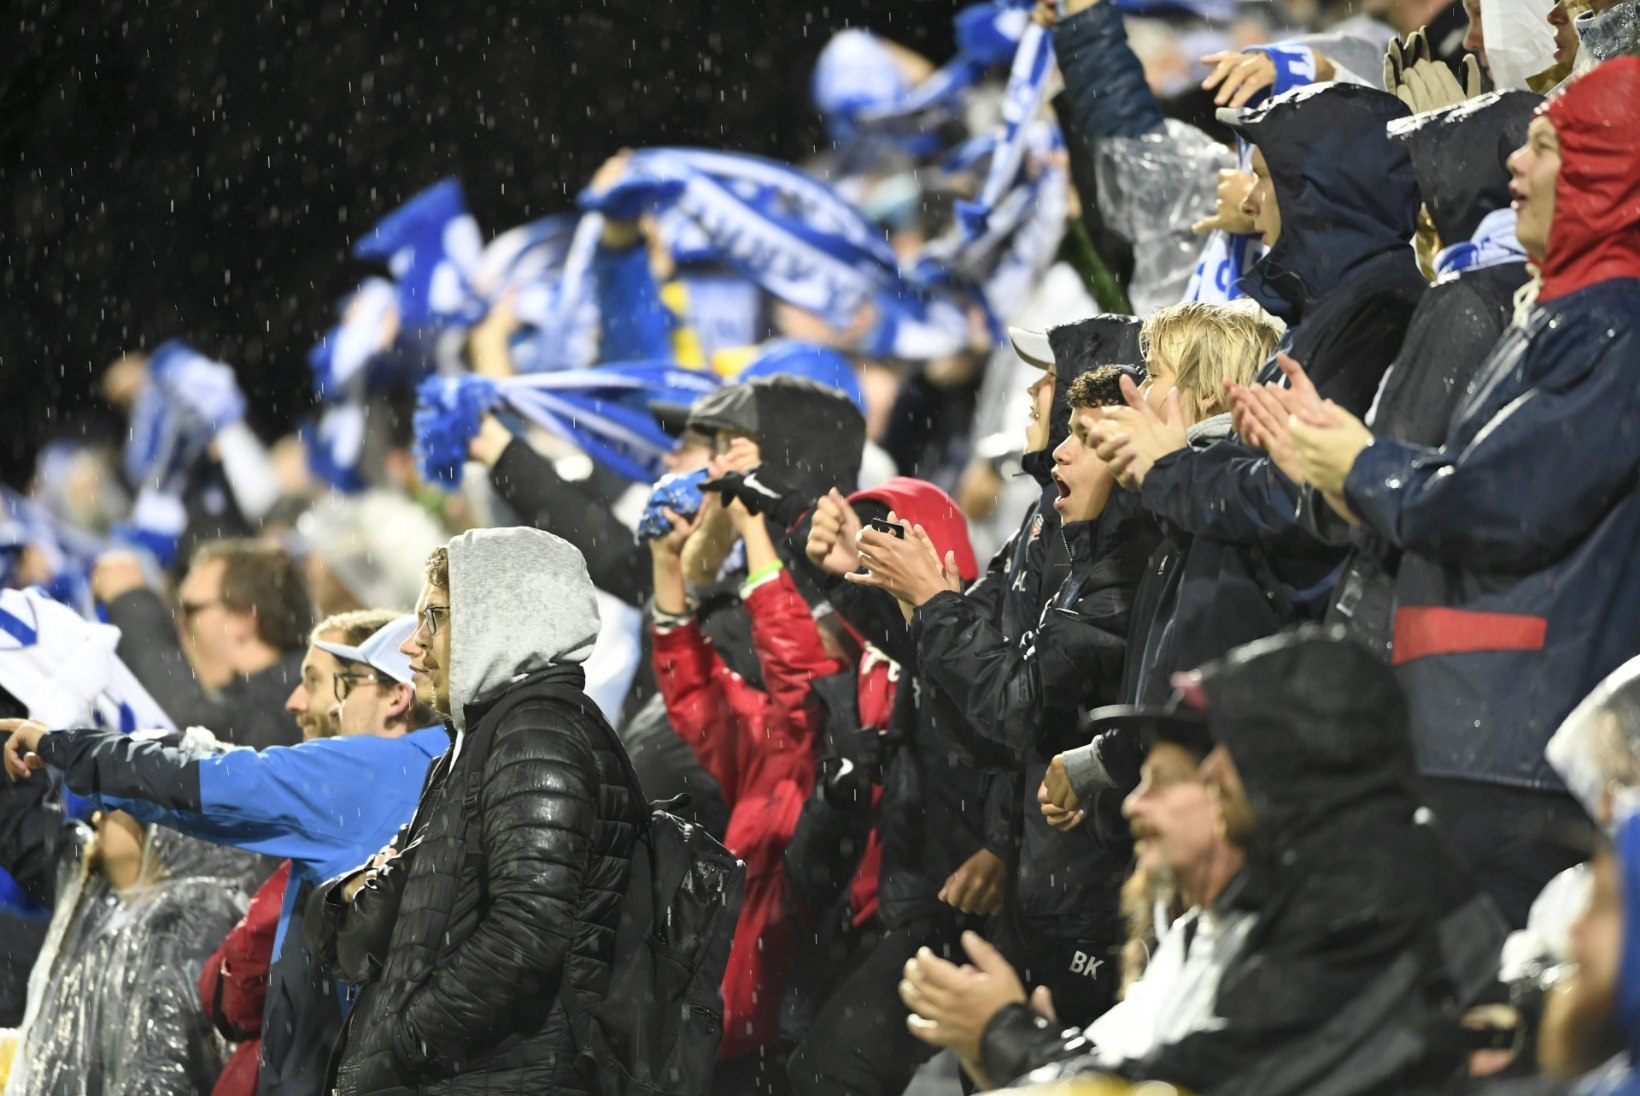 Soome politsei jalgpallimängu eel: eestlased on harjunud purjus soomlastega